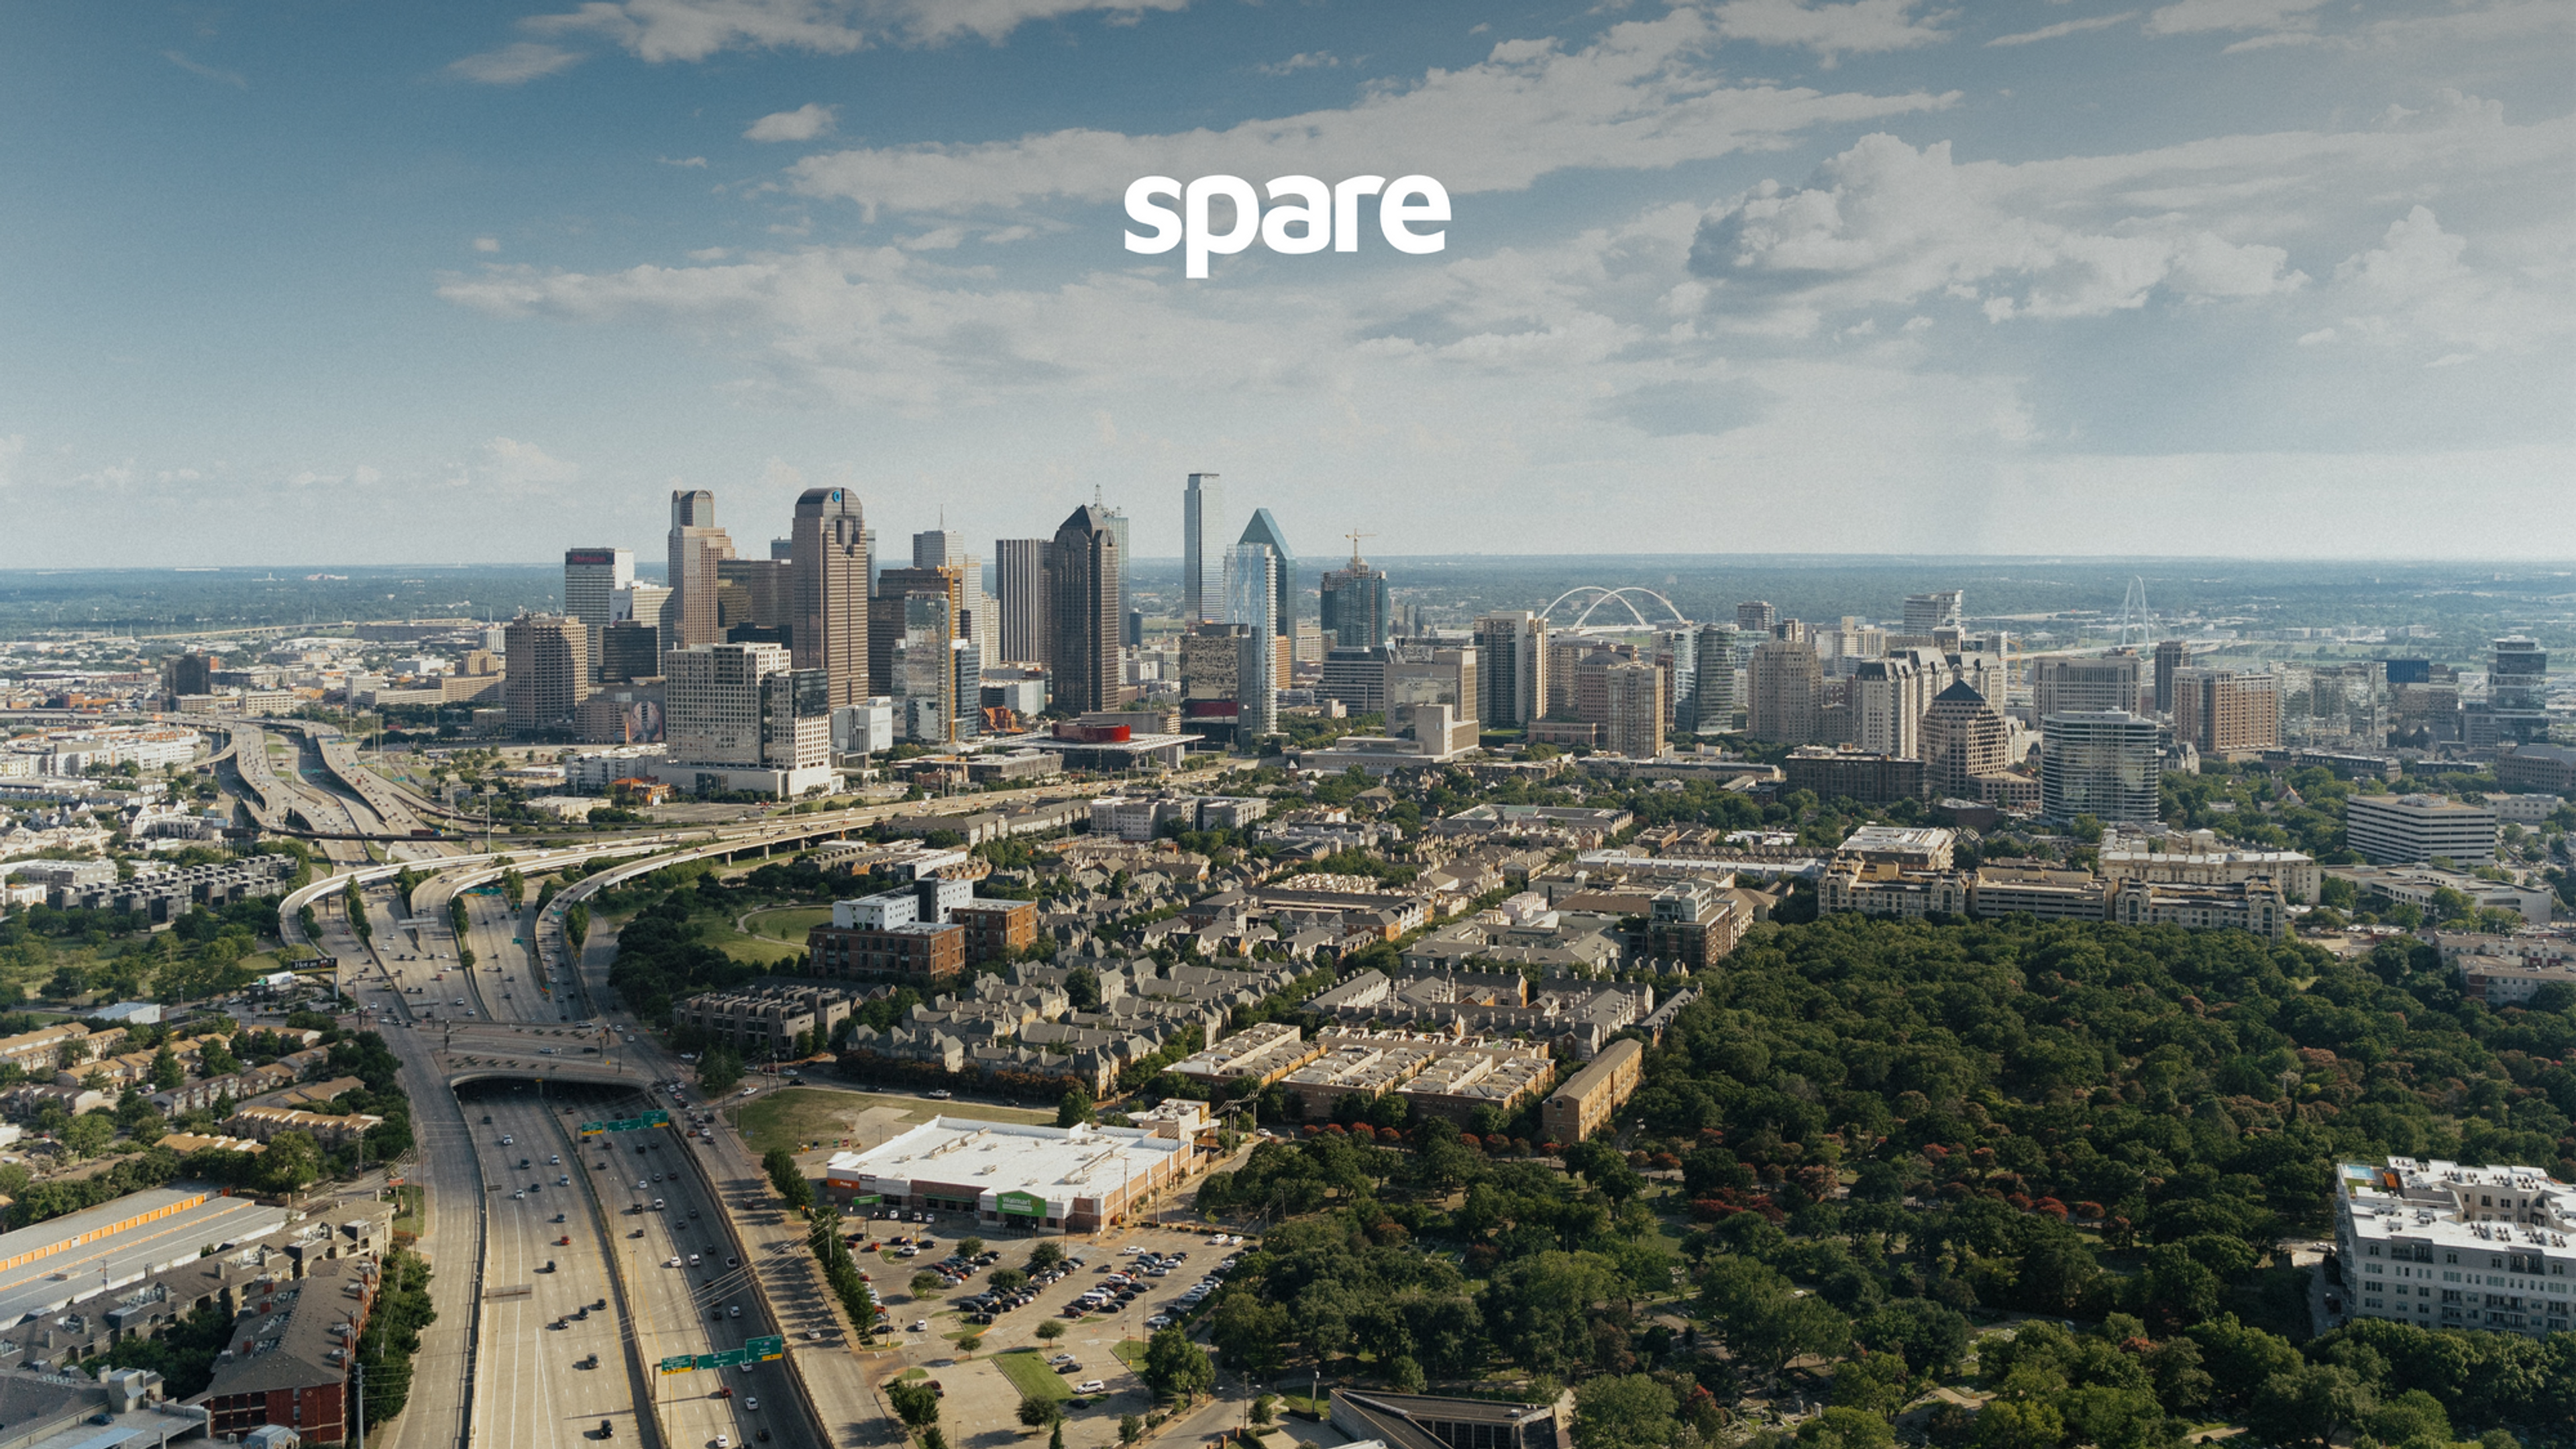 Dallas landscape with Spare logo